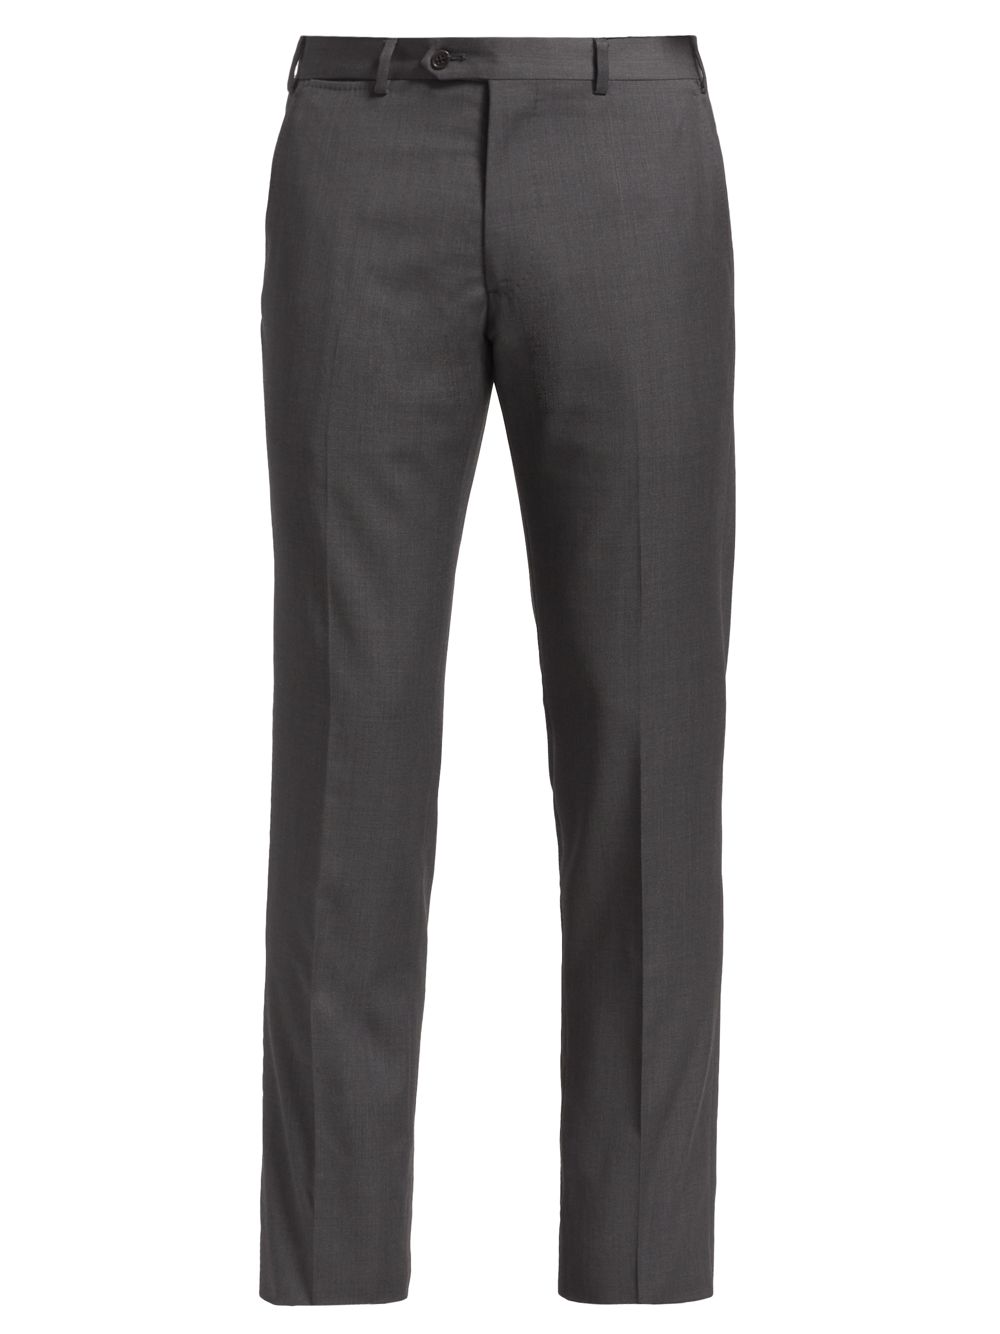 Узкие брюки из натуральной шерсти Emporio Armani, серый